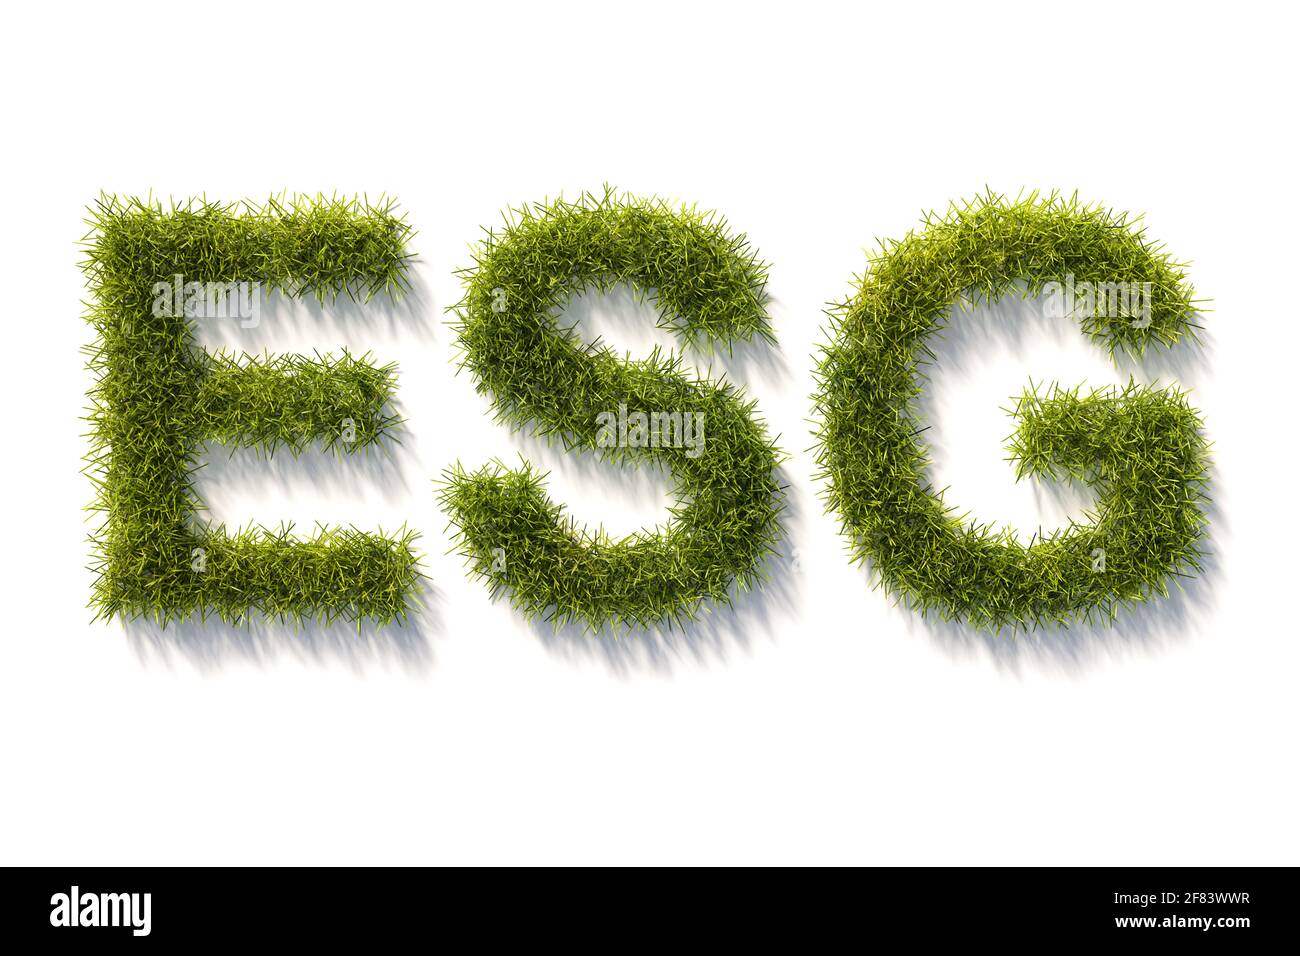 Grüne Grasbuchstaben, isoliert und weiß mit Schatten. Konzept für die Standards von „Environment Social Governance“ (Umweltmanagement) bei Investitionen. Stockfoto